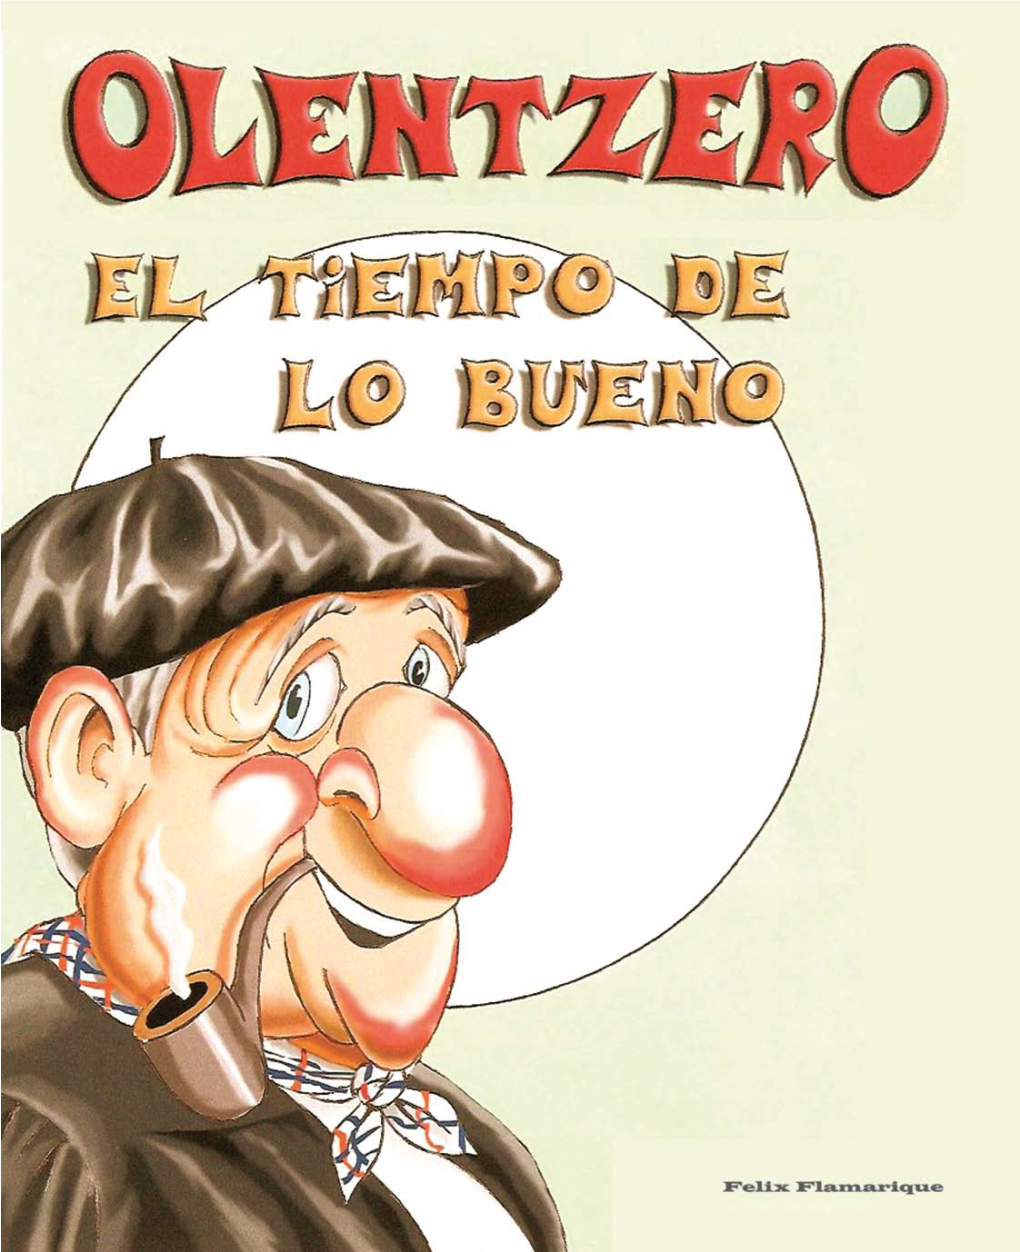 Olentzero, Onaren Aroa